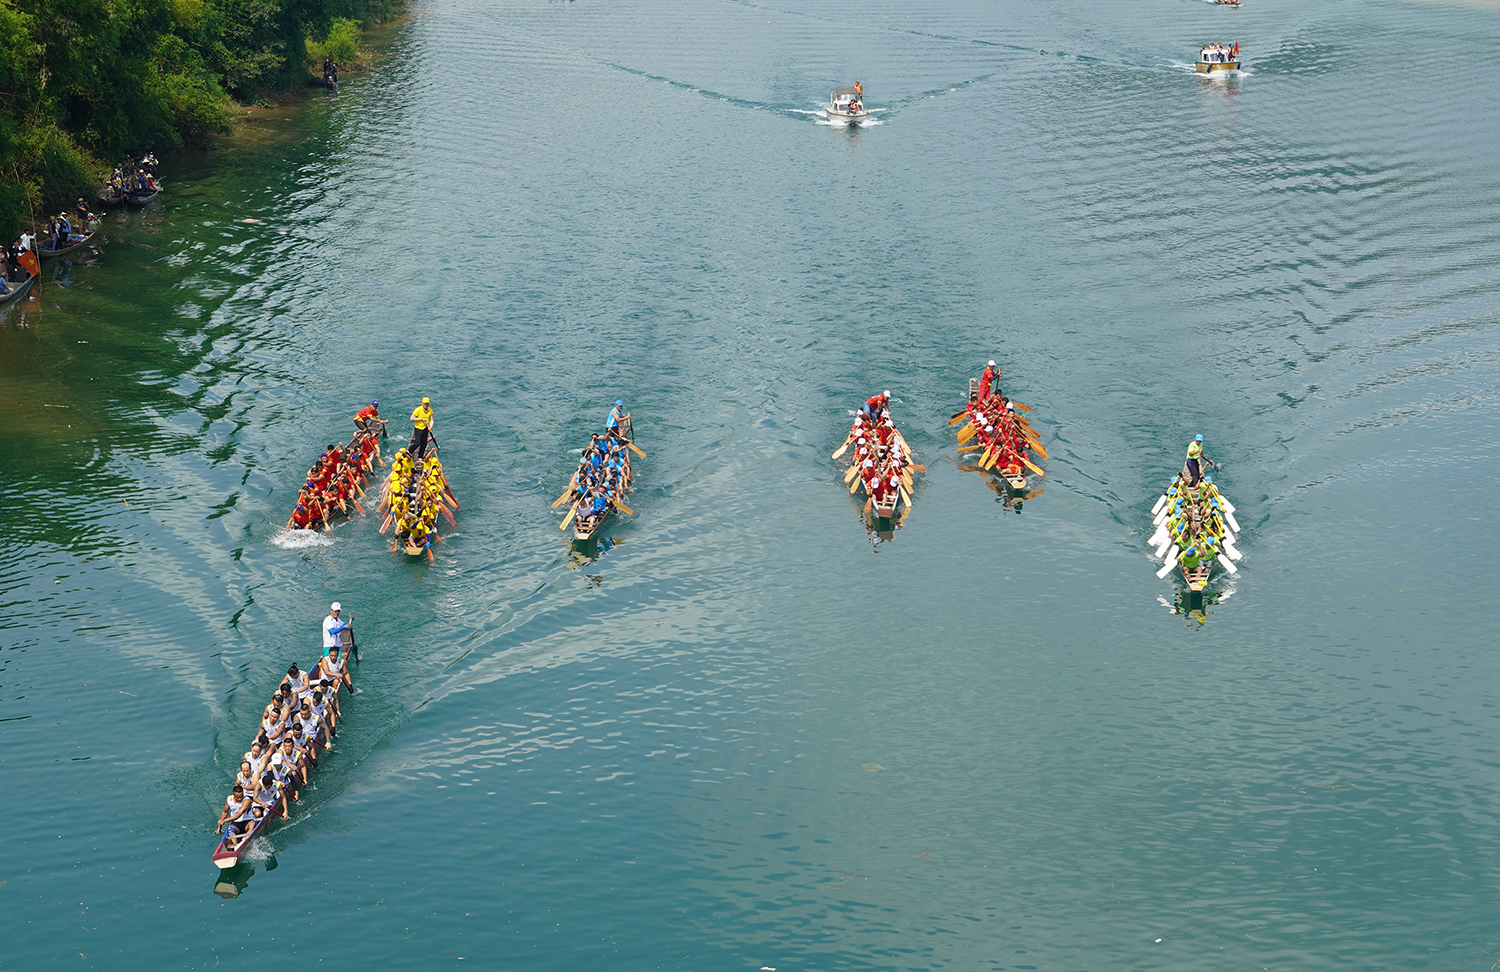 Lễ hội đua thuyền truyền thống trên sông Son thành công tốt đẹp